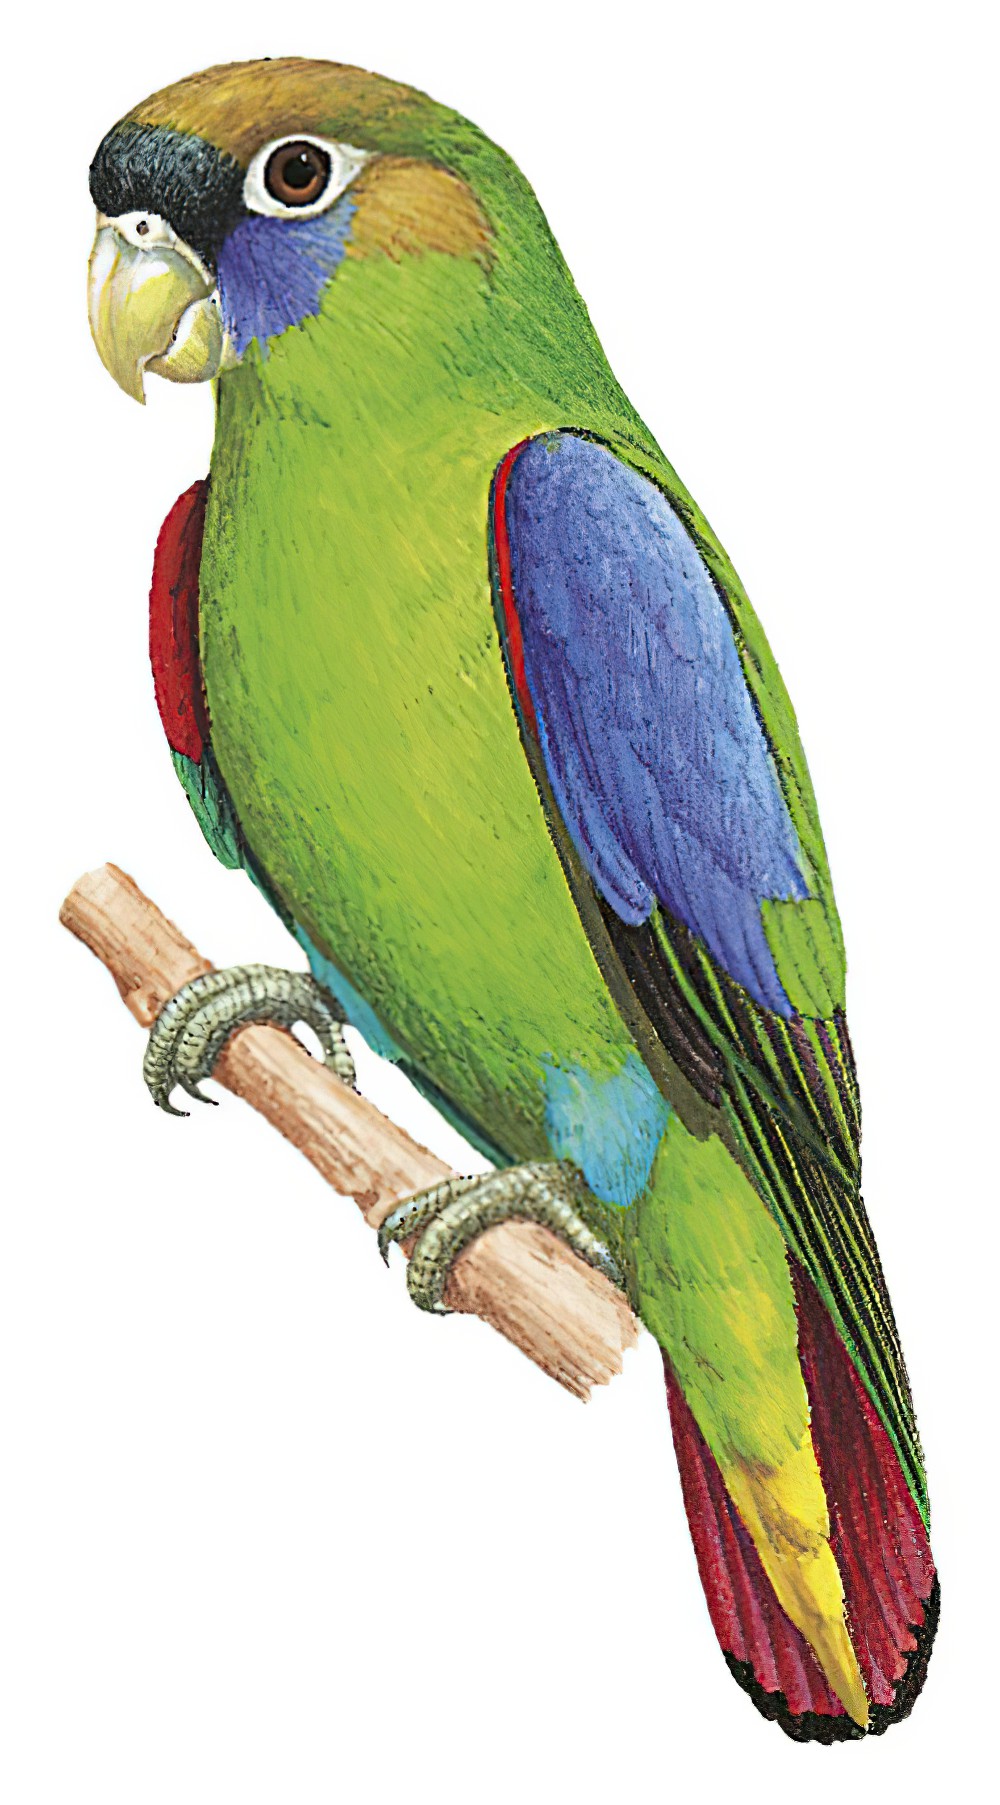 Scarlet-shouldered Parrotlet / Touit huetii